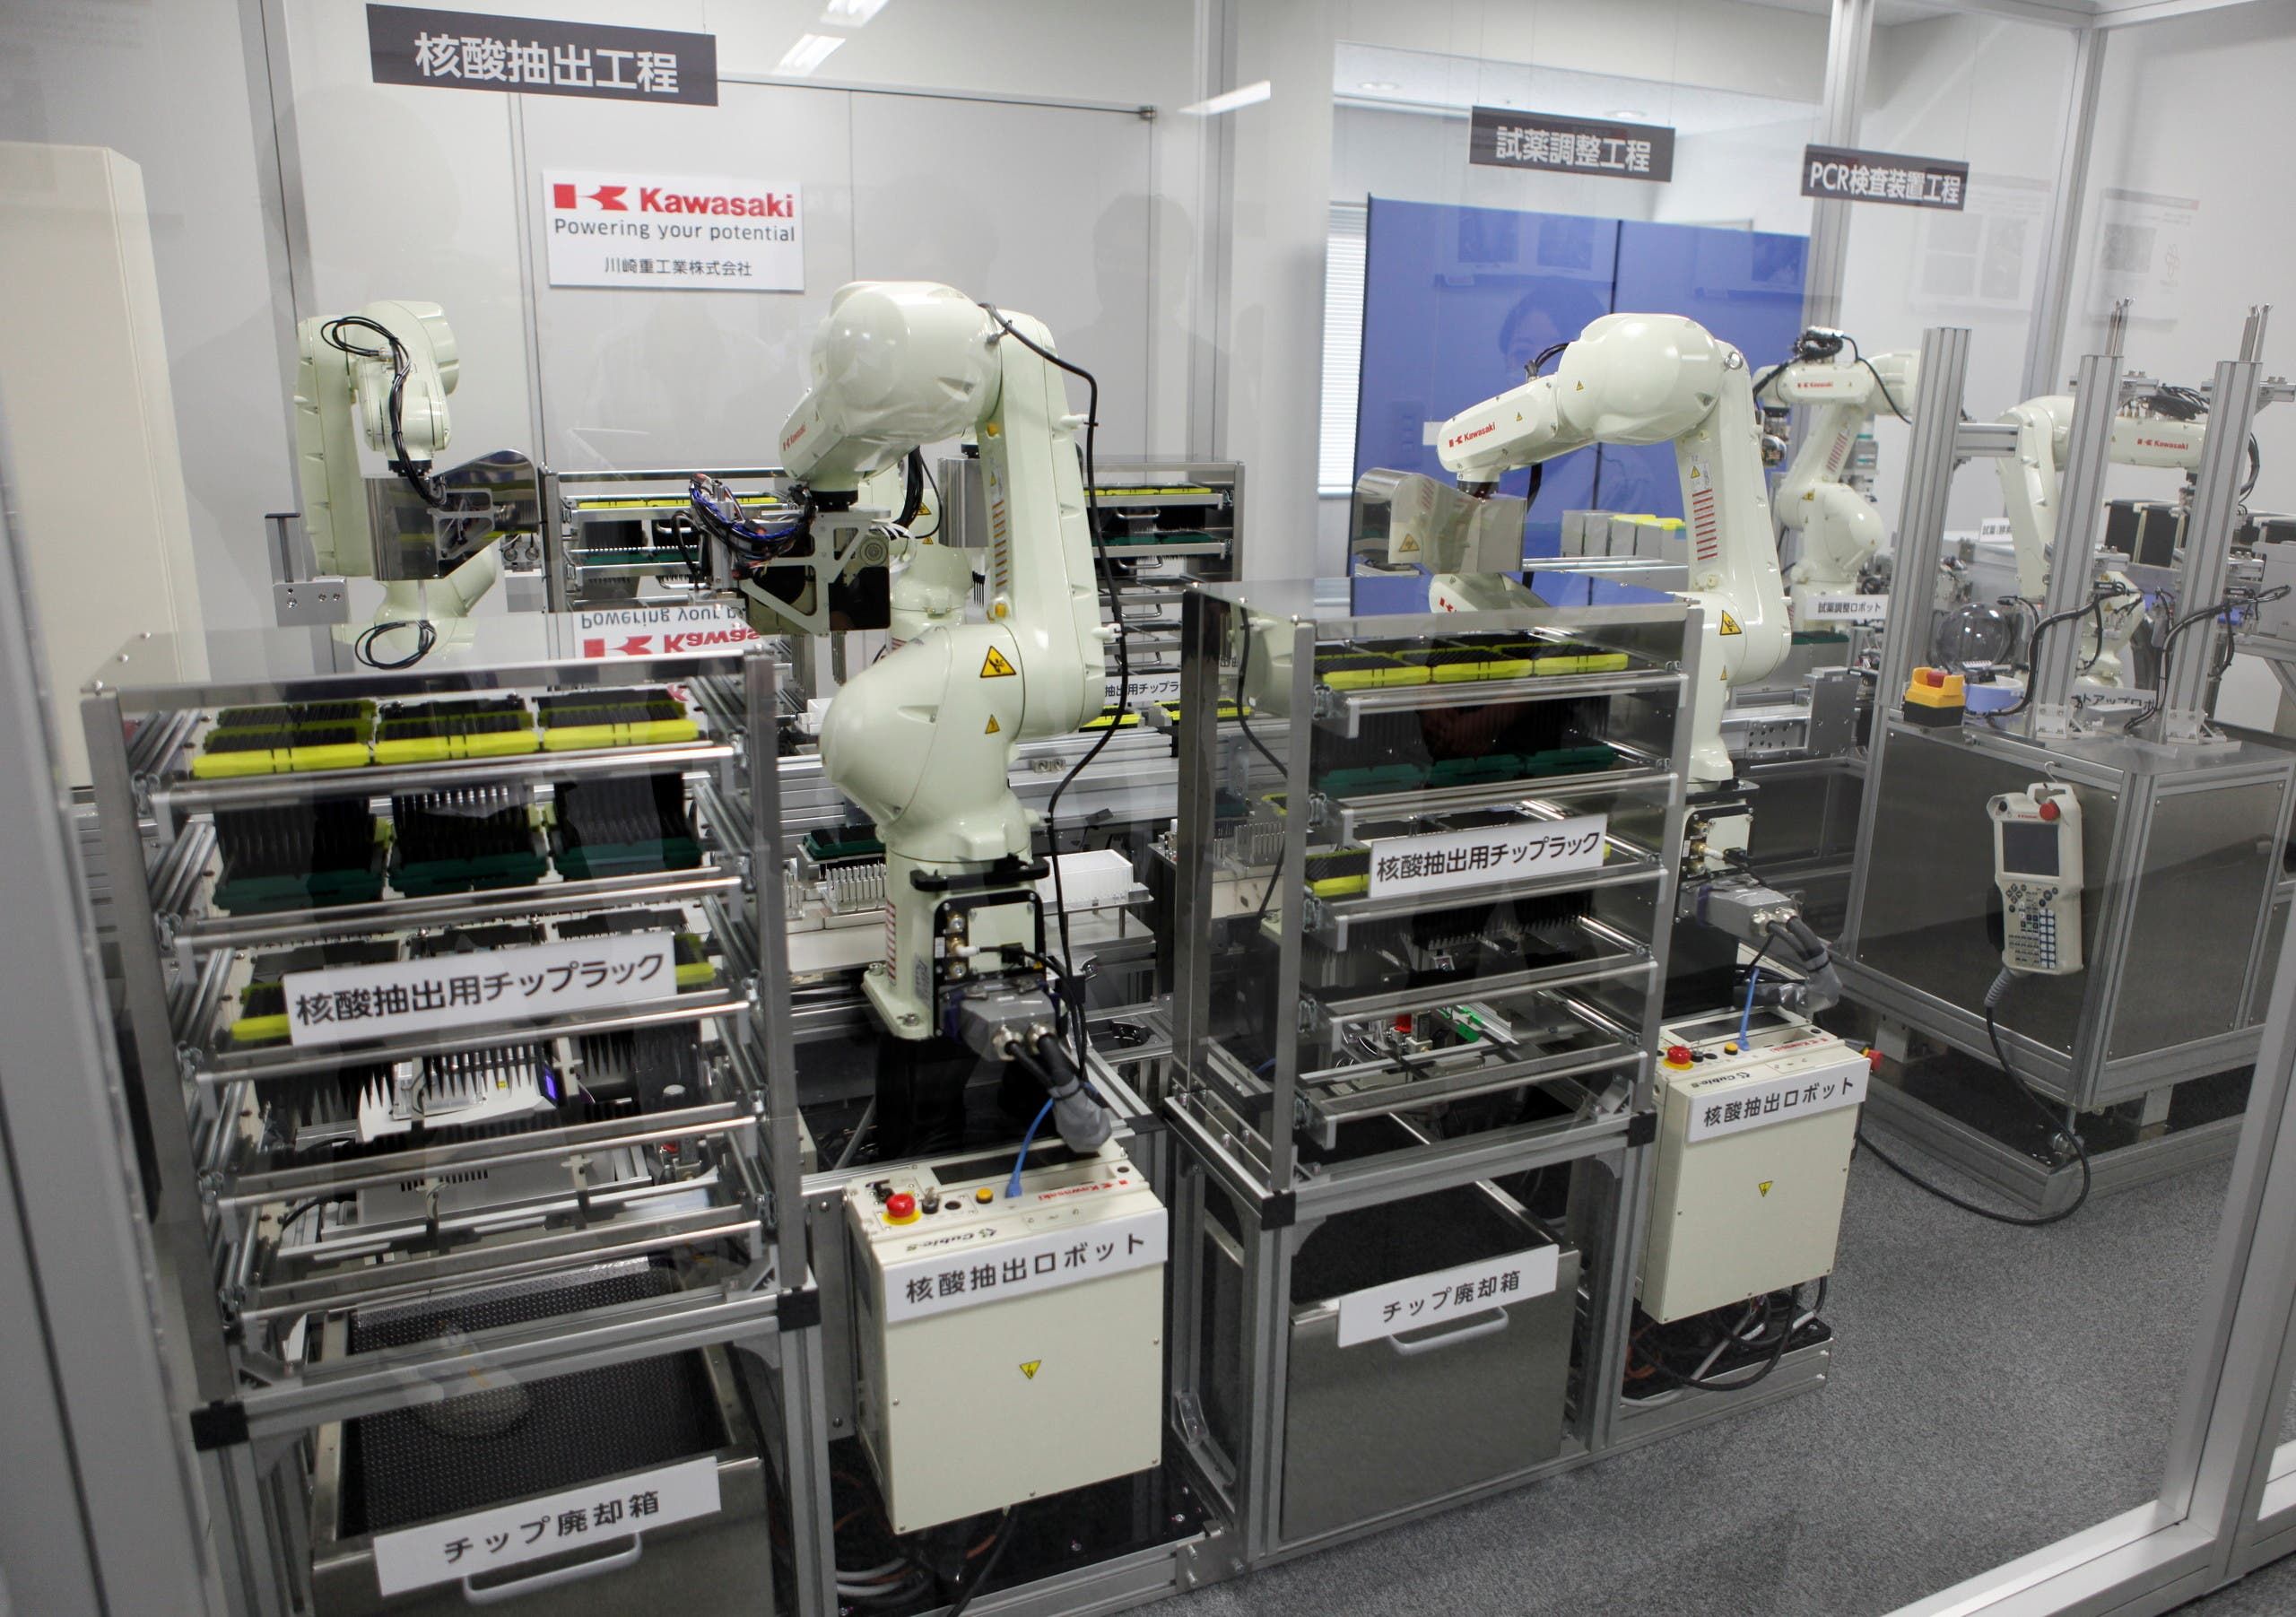 من المختبر حيث يتم تطوير هذه الروبوتات